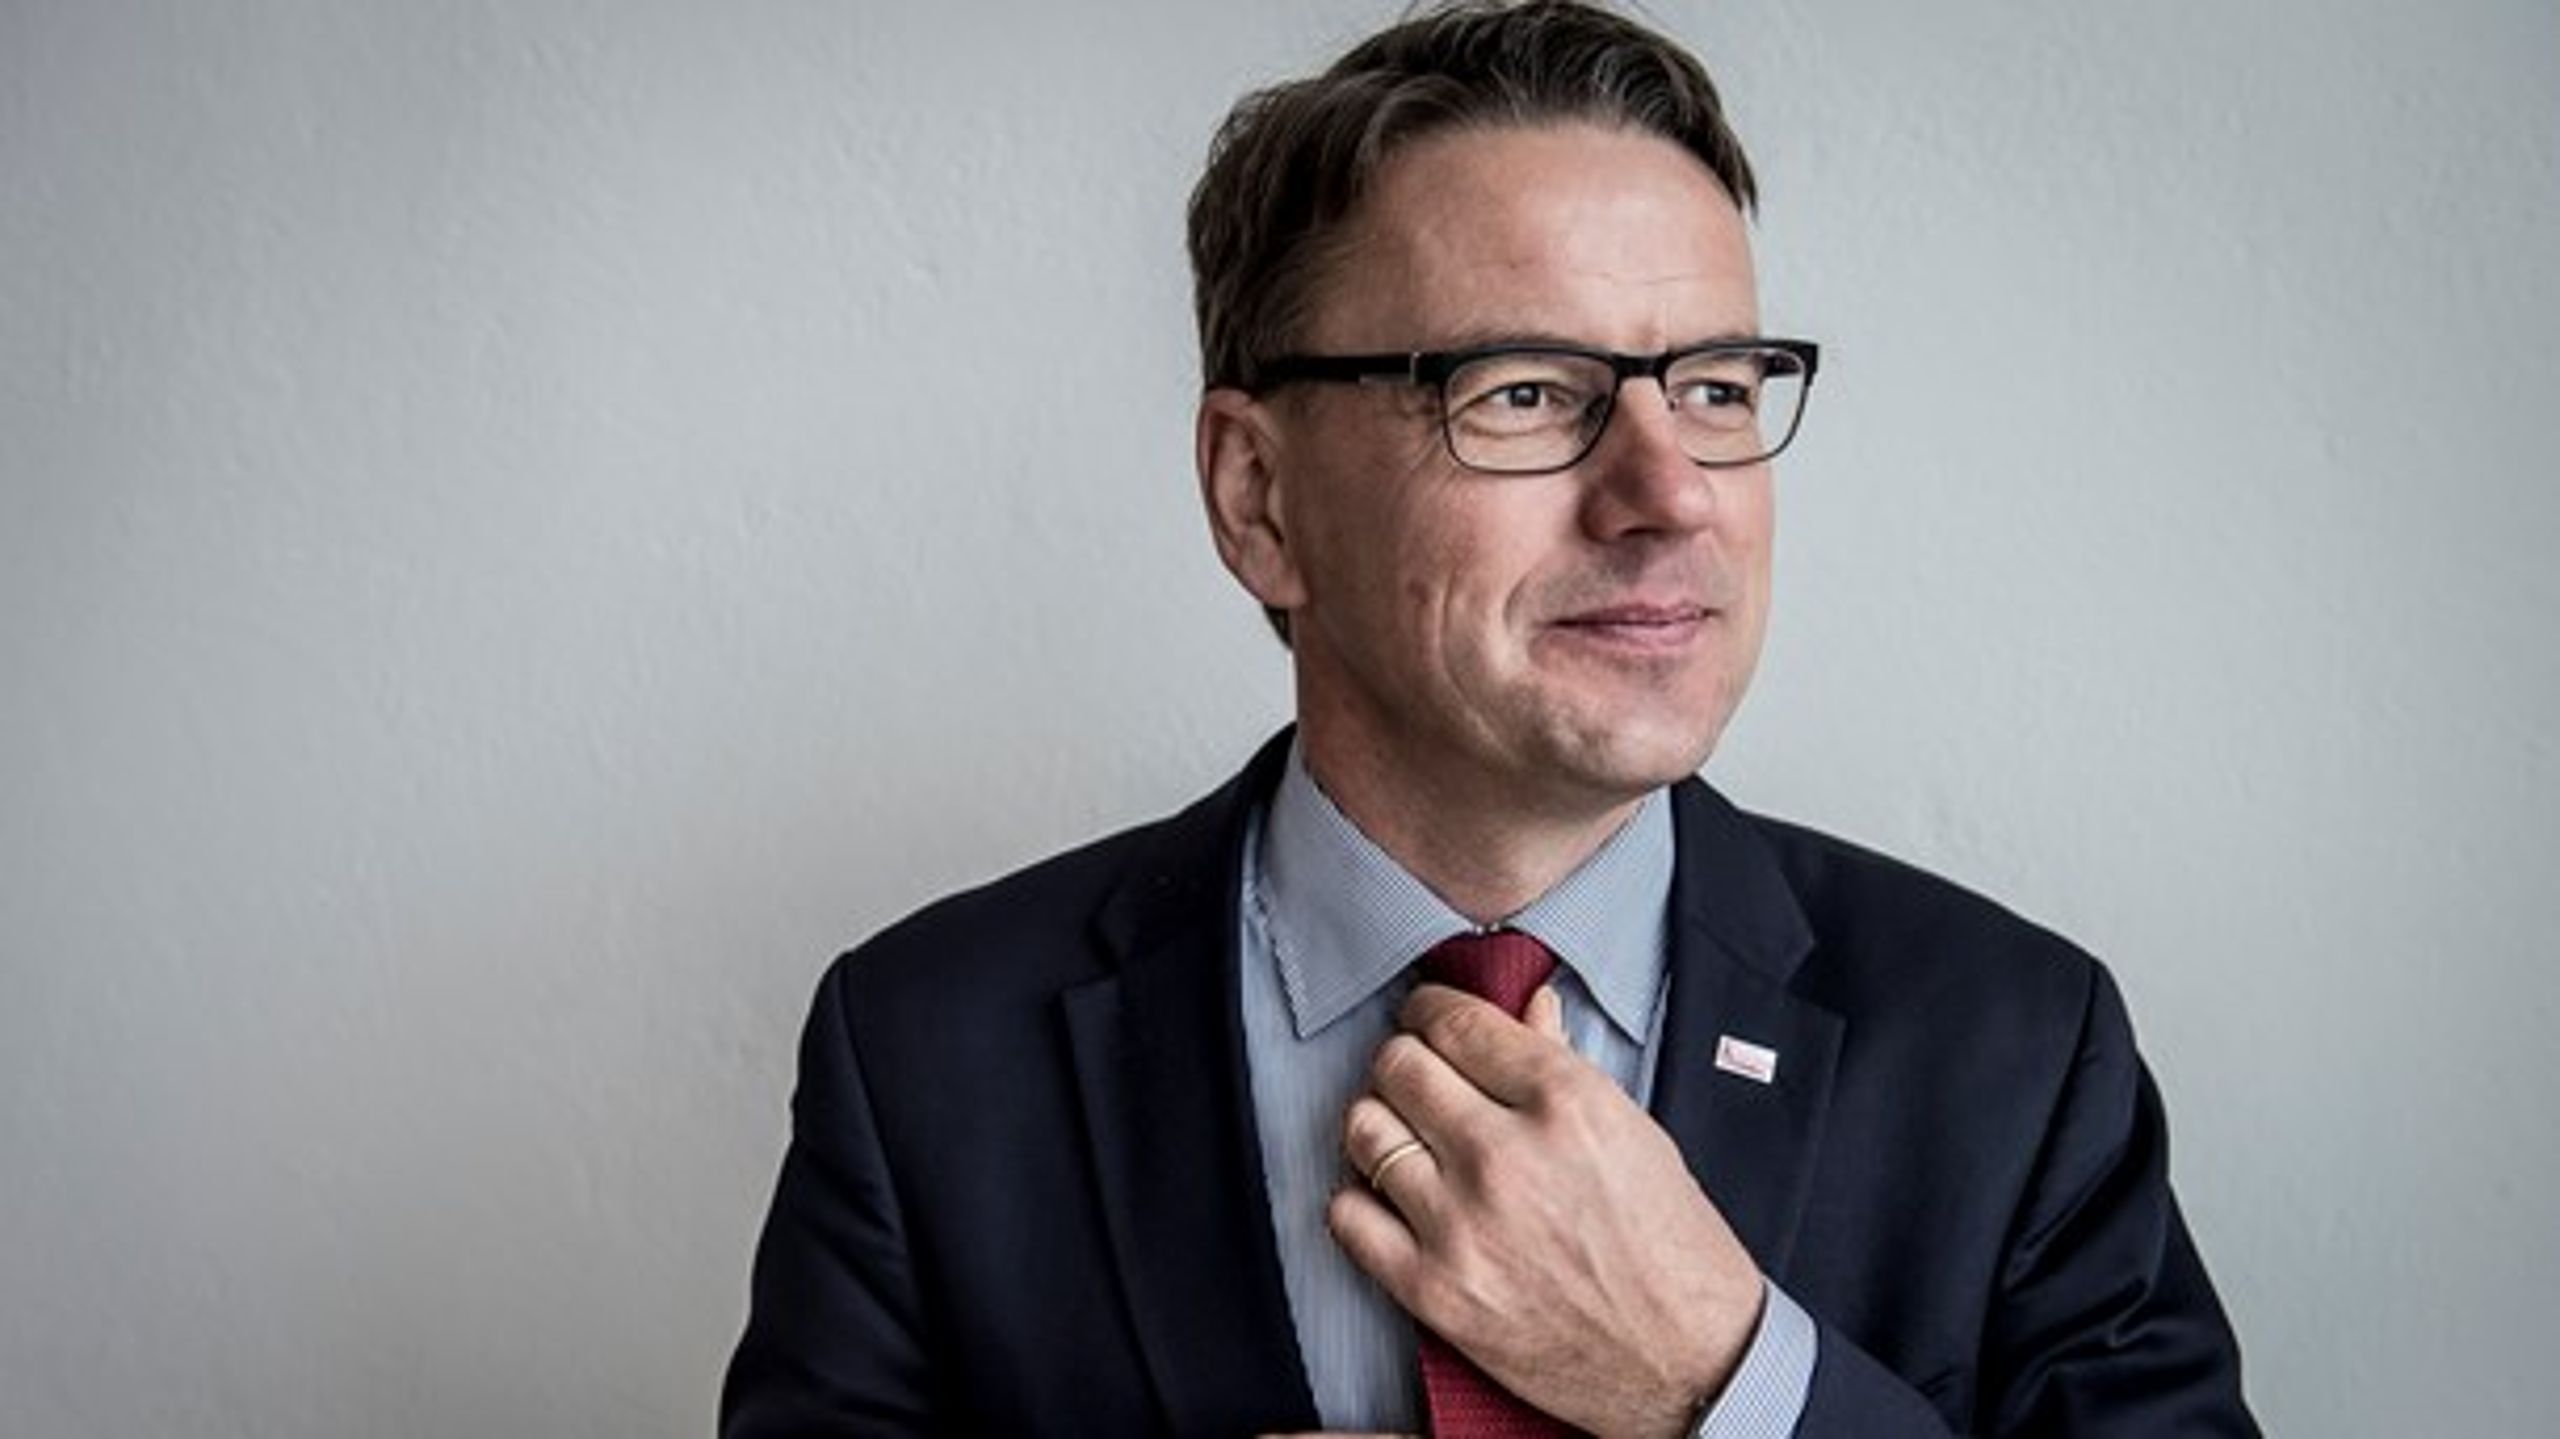 Dansk Flygtningehjælp er vokset med næsten 200 procent siden 2010. Men de kommende år skruer man ned for vækstambitionerne, siger generalsekretær Christian Friis Bach.